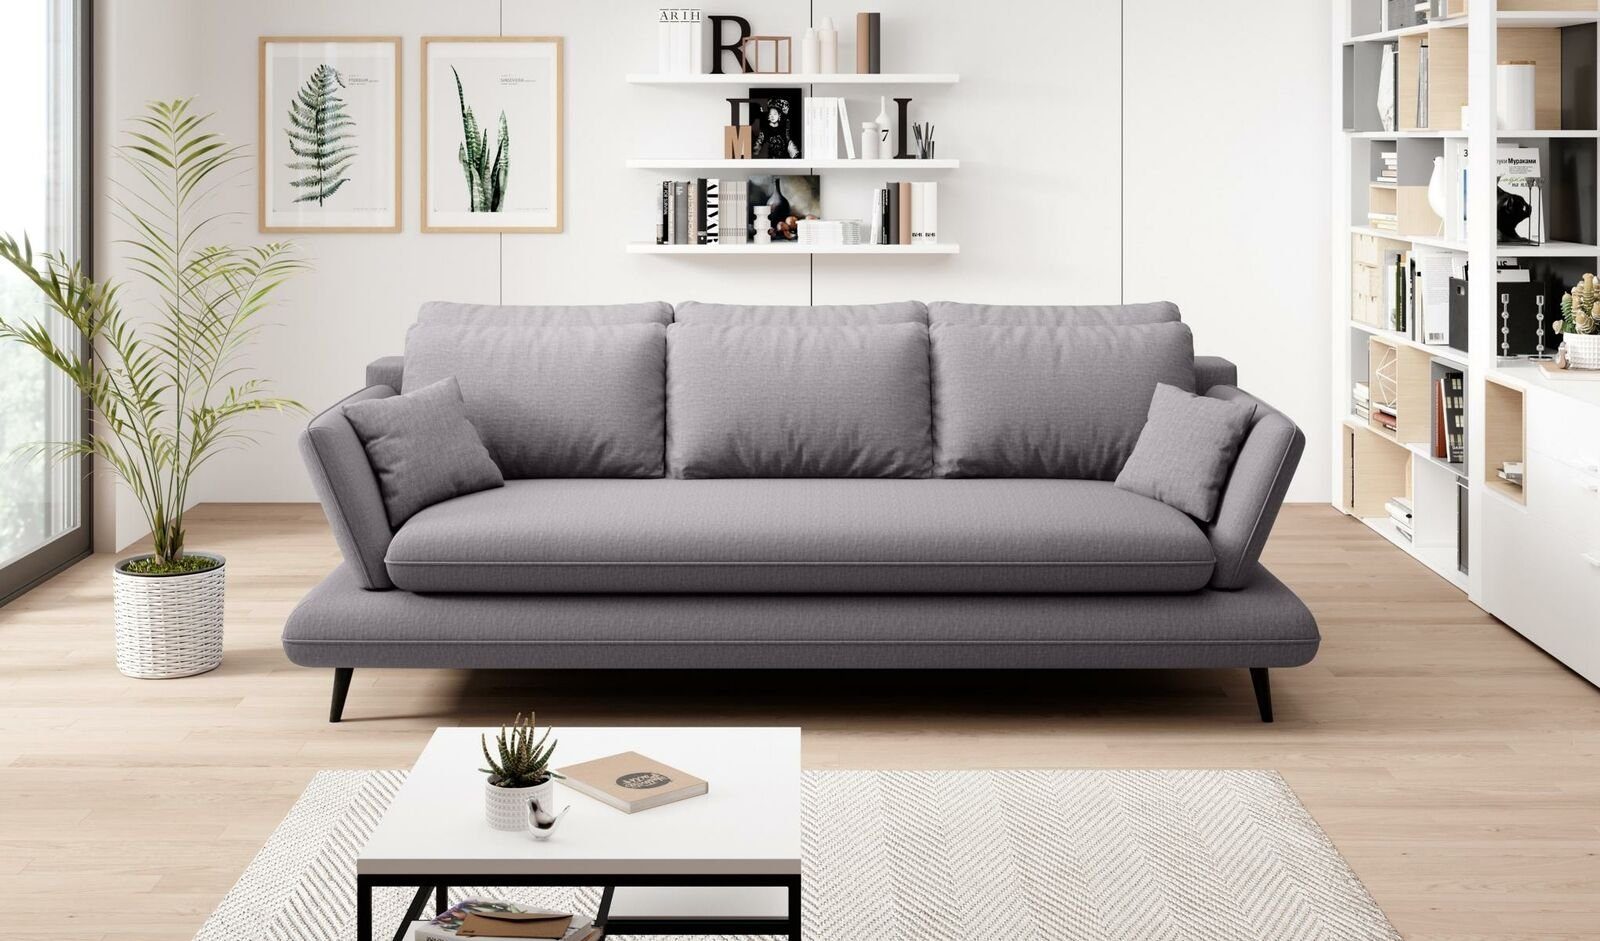 JVmoebel Chesterfield-Sofa Luxus Couch Made 3-Sitzer stilvoll in Grauer Dreisitzer Europe moderne Neu